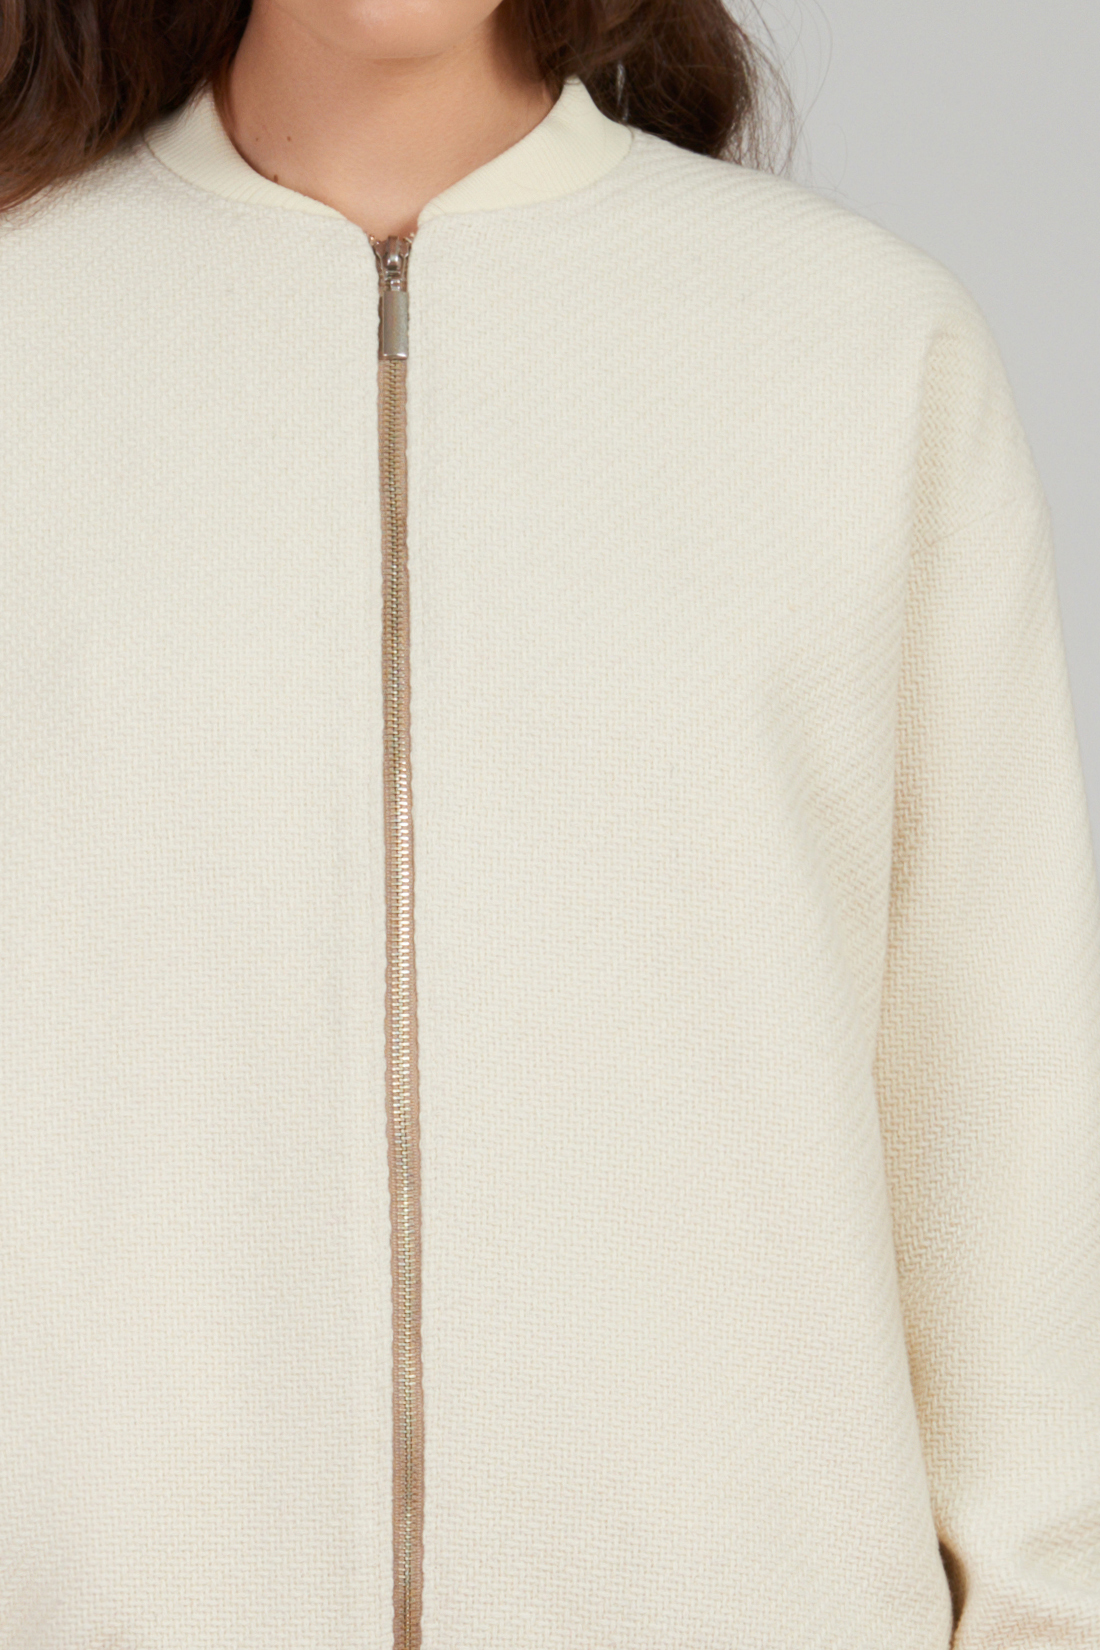 Бомбер из материала с рельефным плетением (арт. baon B127511), размер XS, цвет белый Бомбер из материала с рельефным плетением (арт. baon B127511) - фото 4